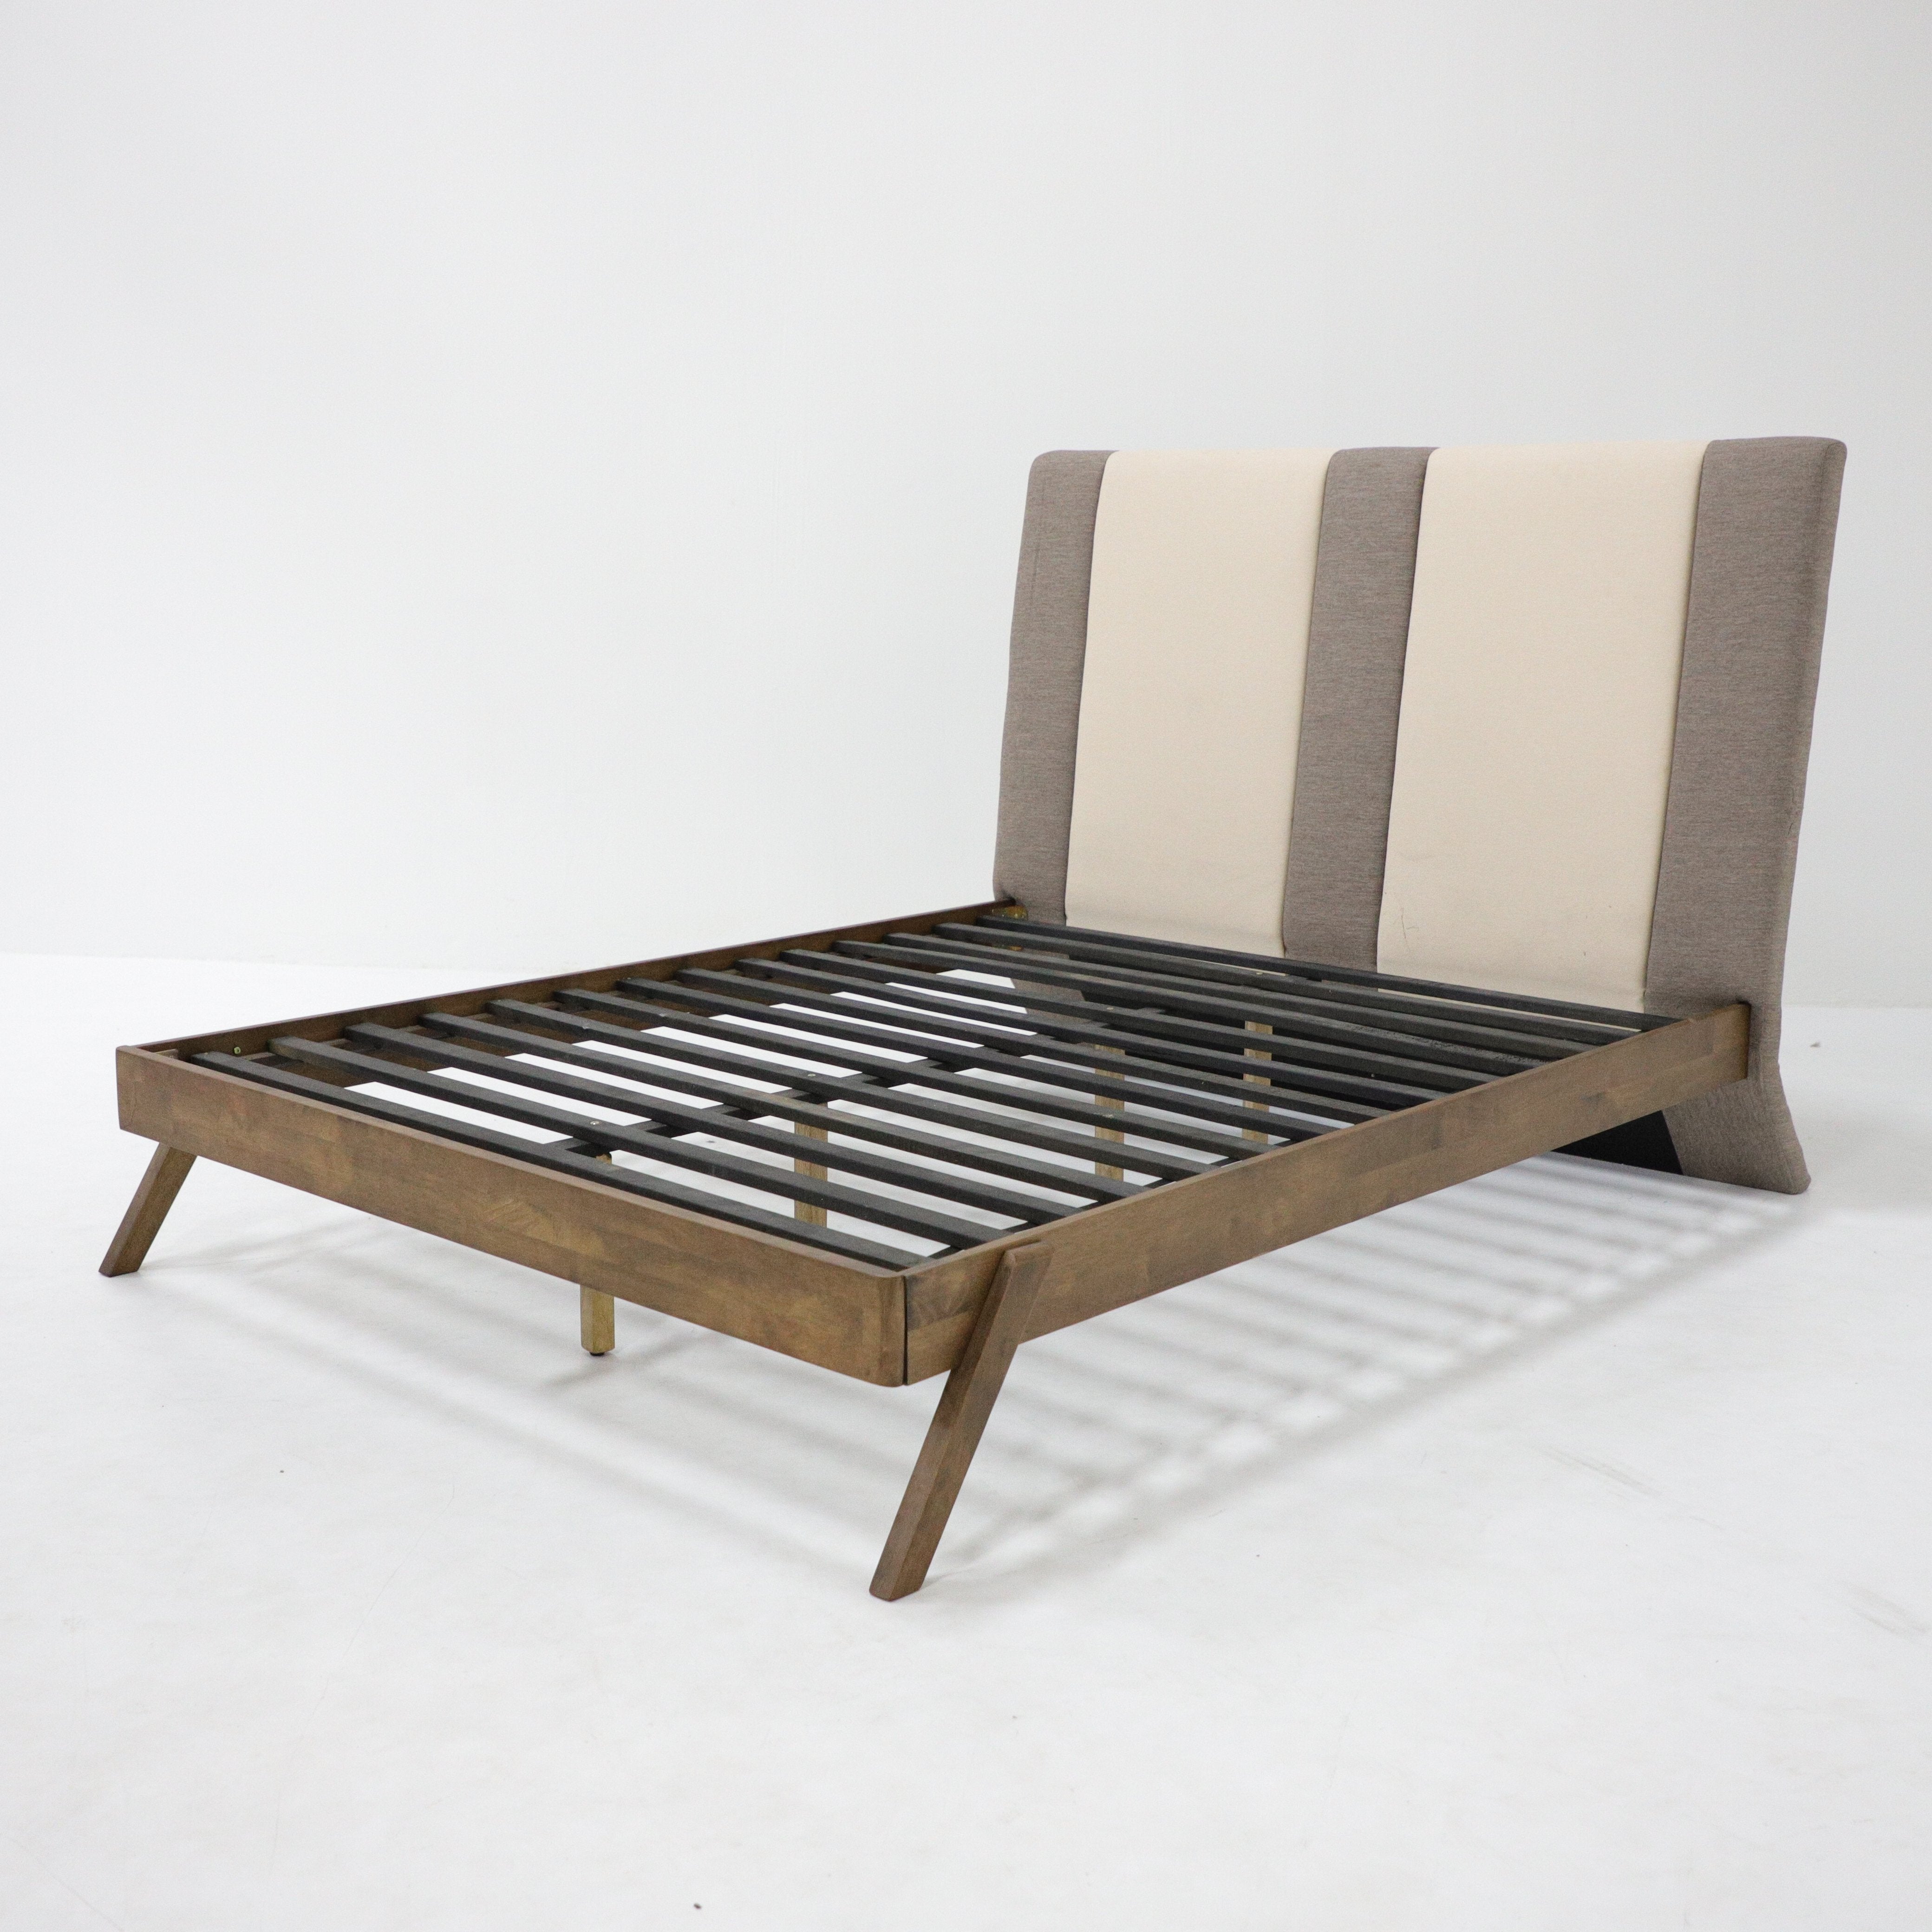 <b>Mirilo King Bed with Cushion</b><br>L1925 X D2115 X H1230MM